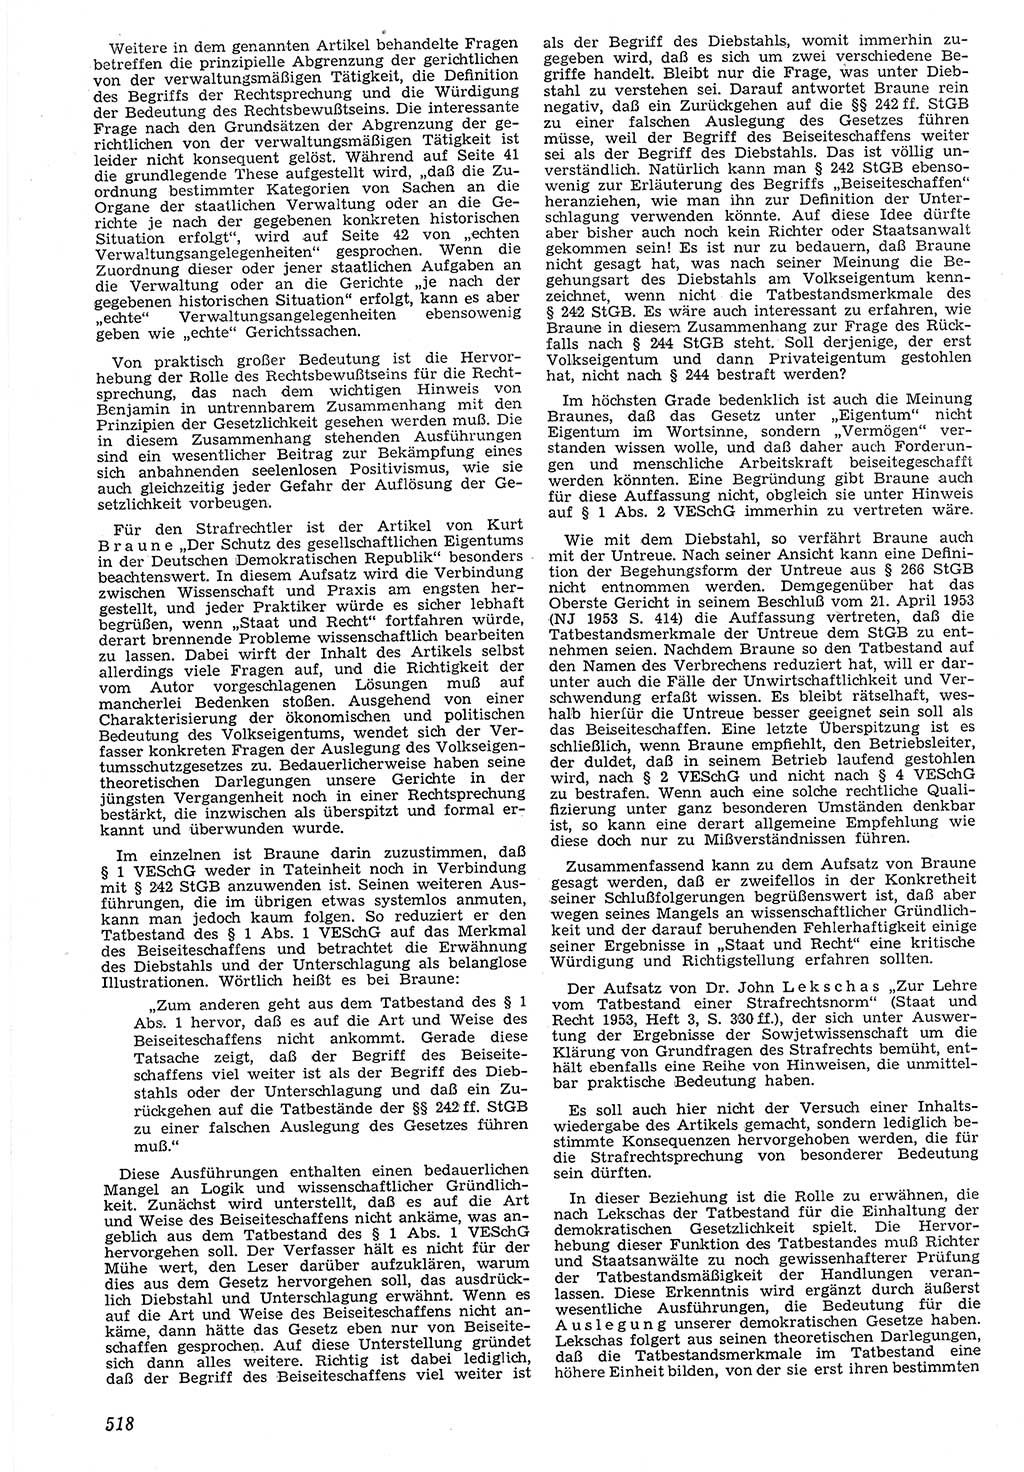 Neue Justiz (NJ), Zeitschrift für Recht und Rechtswissenschaft [Deutsche Demokratische Republik (DDR)], 7. Jahrgang 1953, Seite 518 (NJ DDR 1953, S. 518)